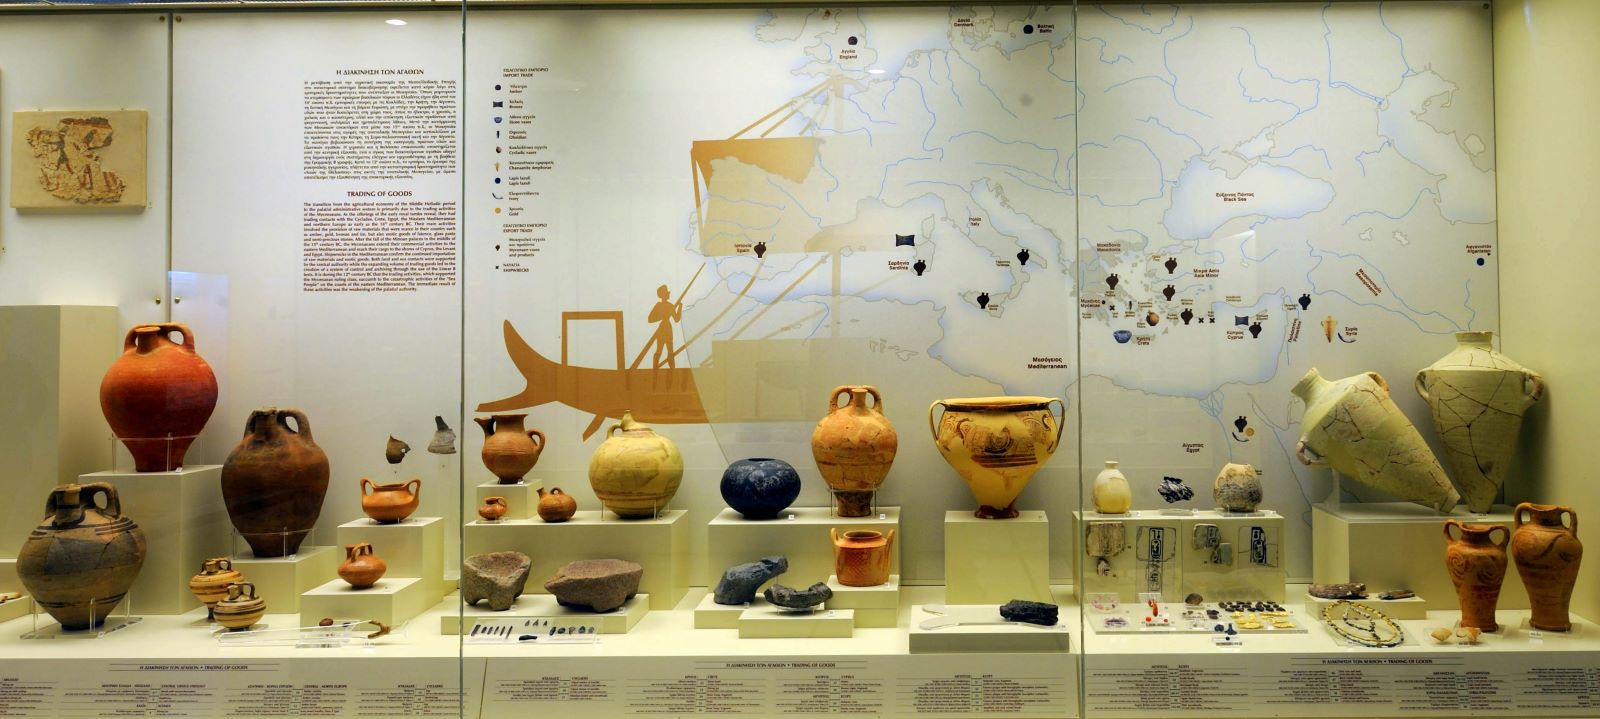 Προθήκη στην οποία προβάλλεται η διακίνηση αγαθών κατά τη Μυκηναϊκή εποχή